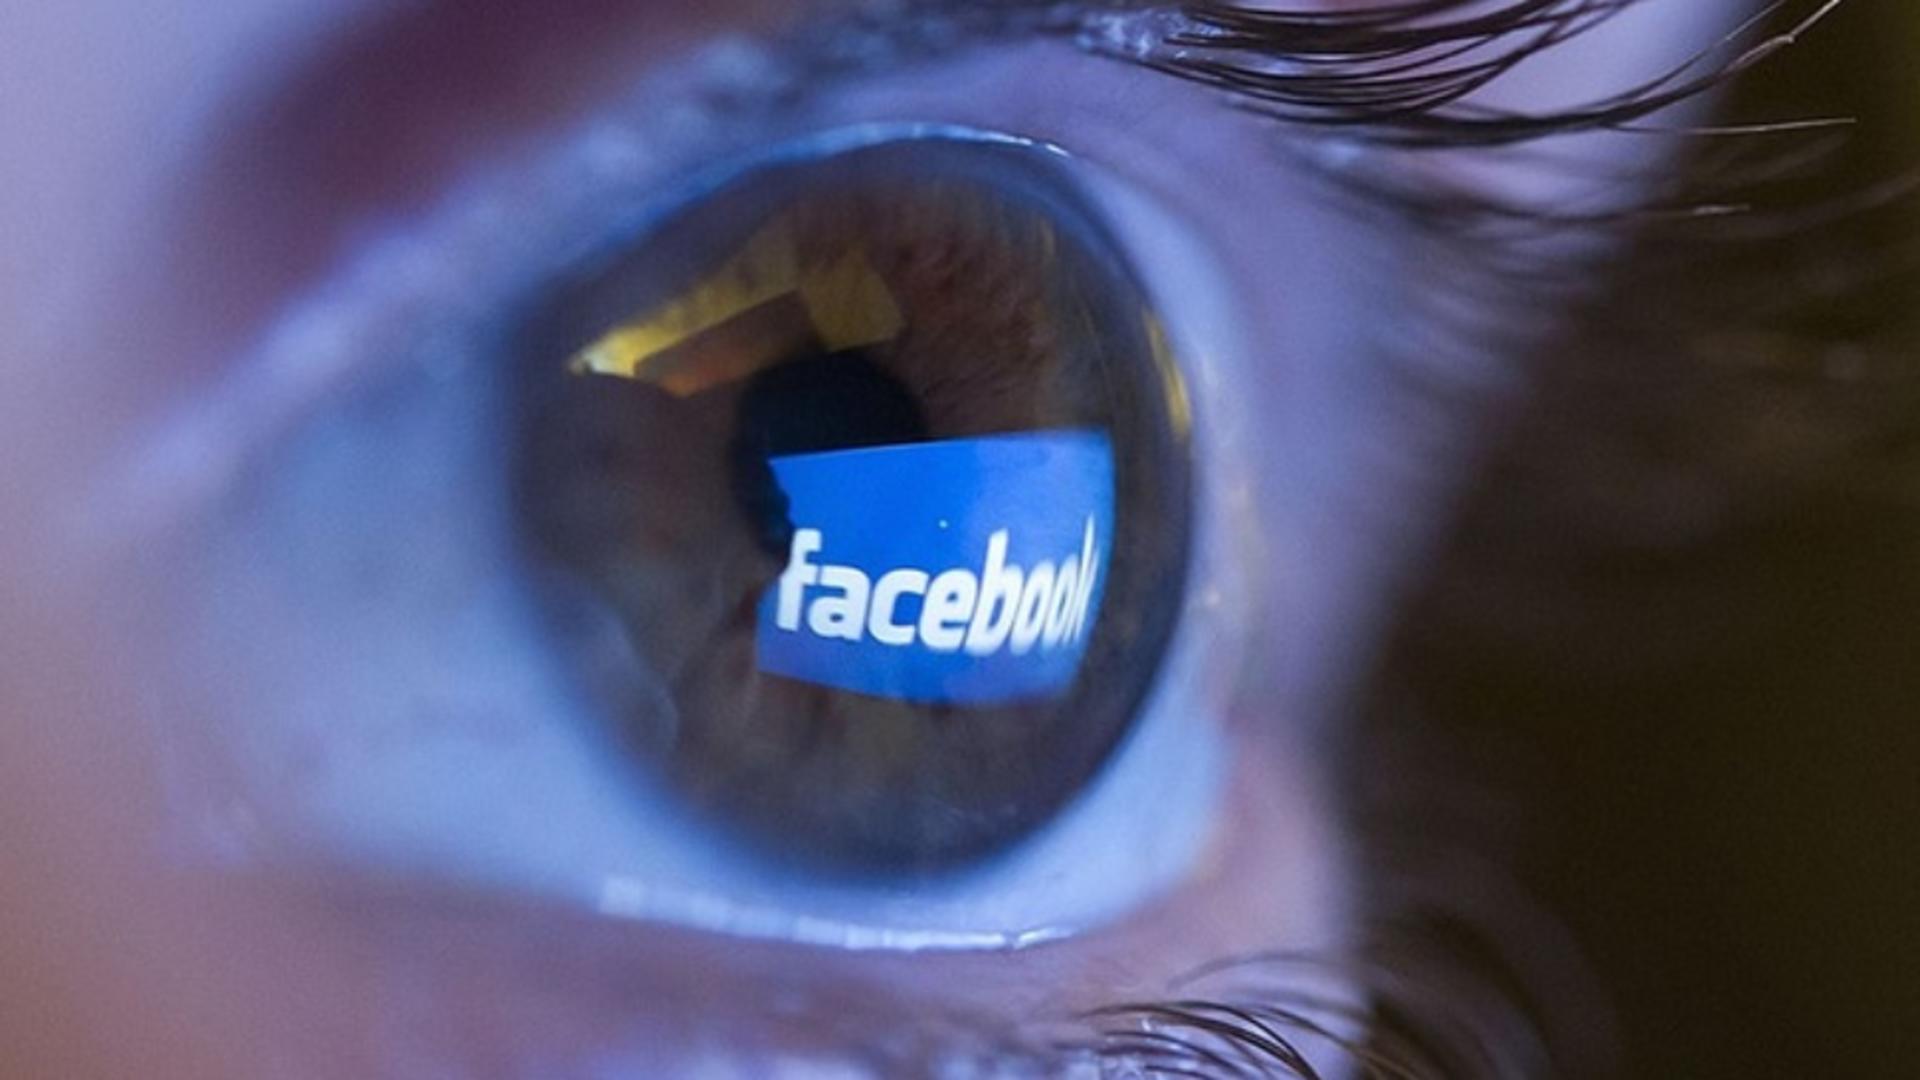 O înșelătorie care a făcut mii de victime printre români a fost reactivată: cum acționează atacatorii pe rețelele sociale și cum să te ferești